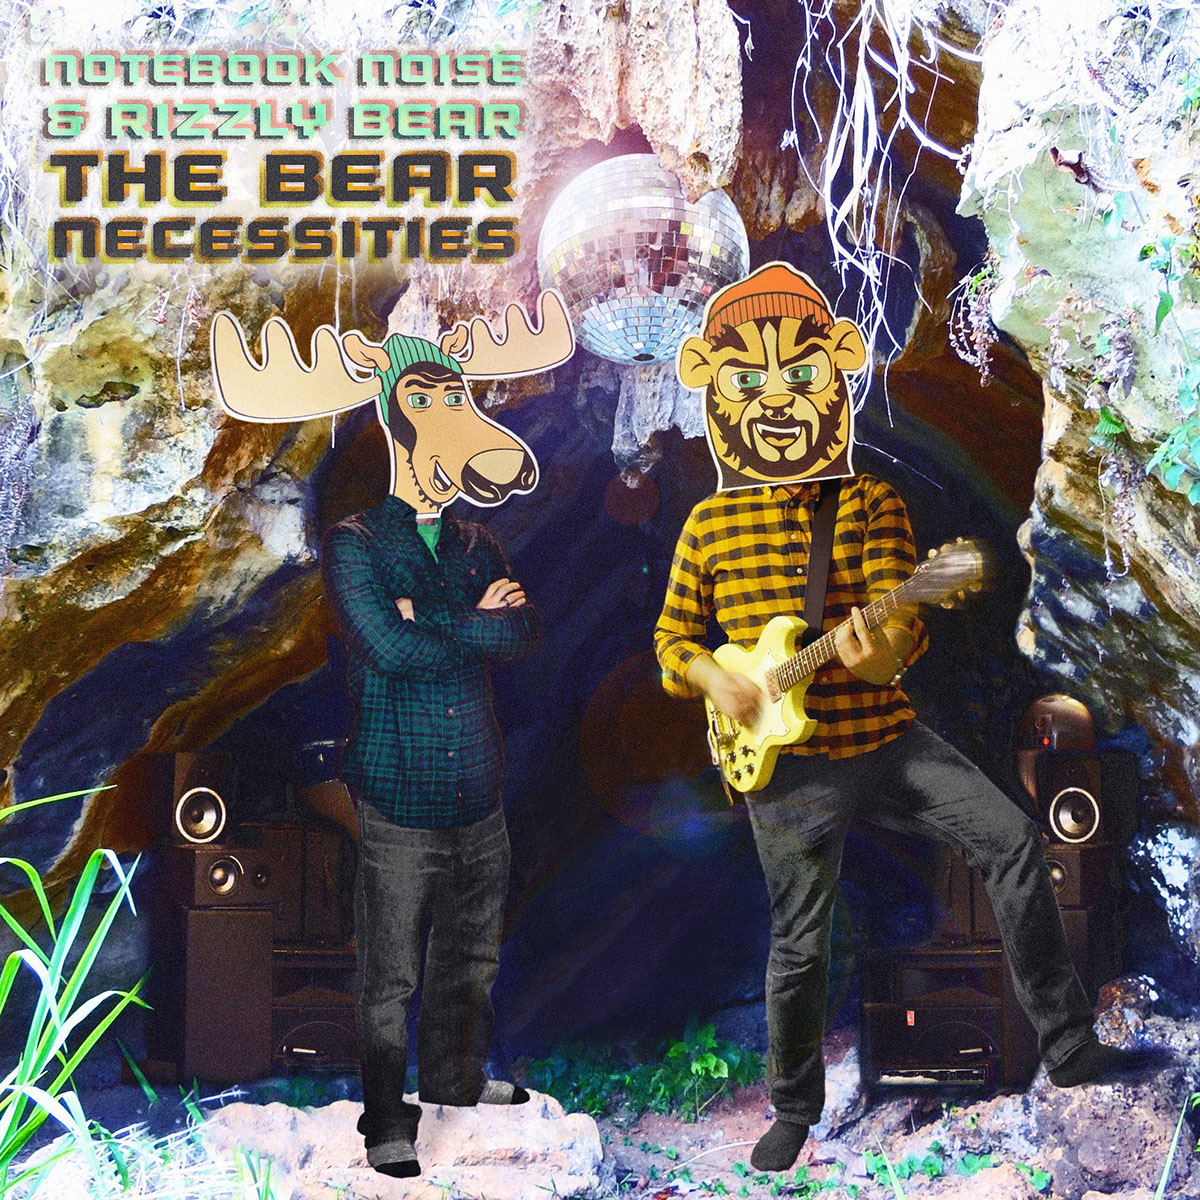 Notebook Noise Rizzly Bear The Bear Necessities album art hip hop